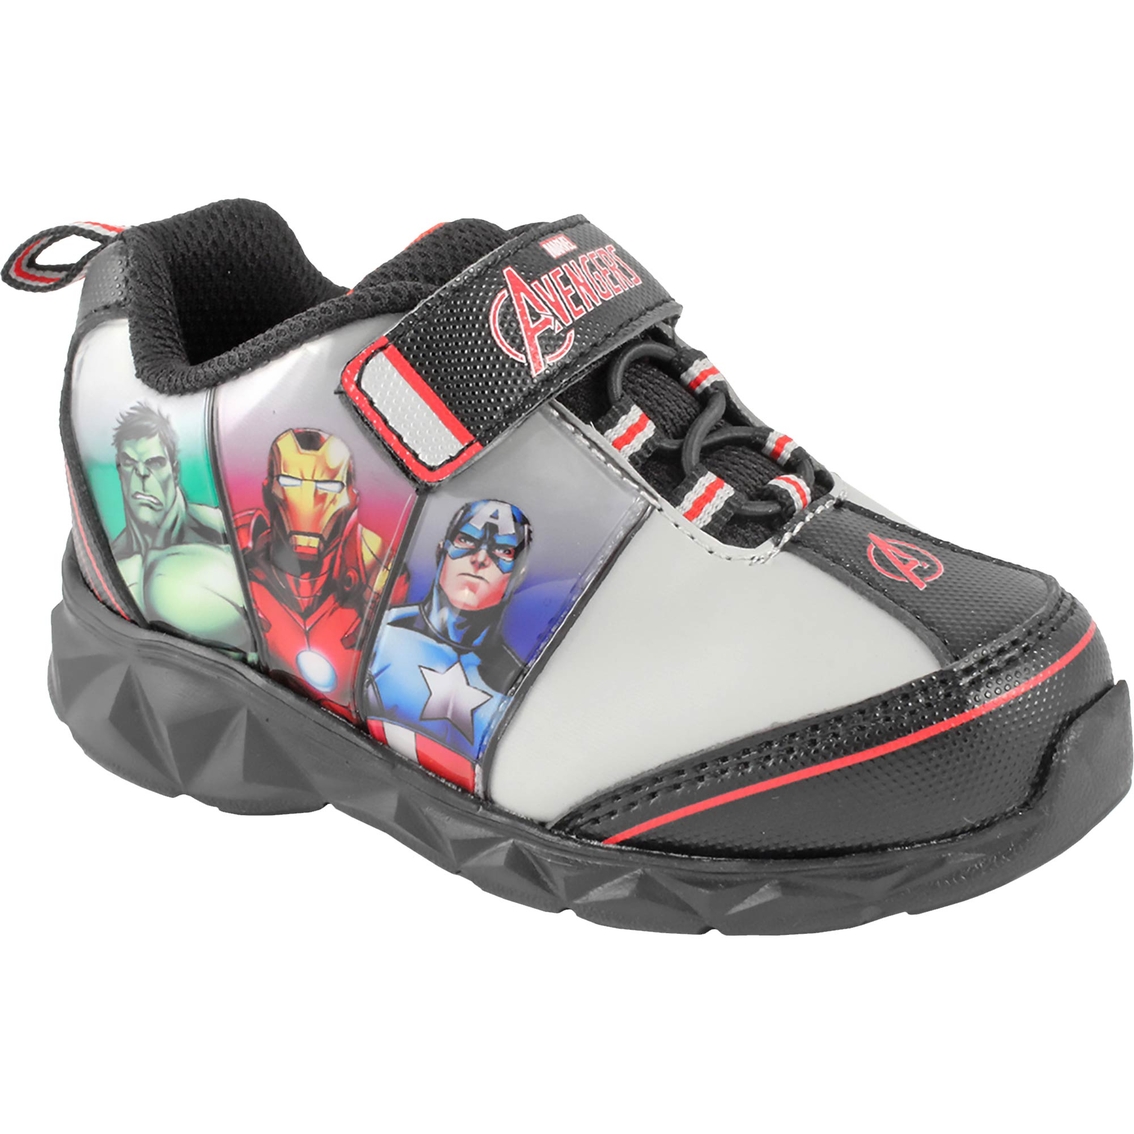 marvel avengers light up shoes